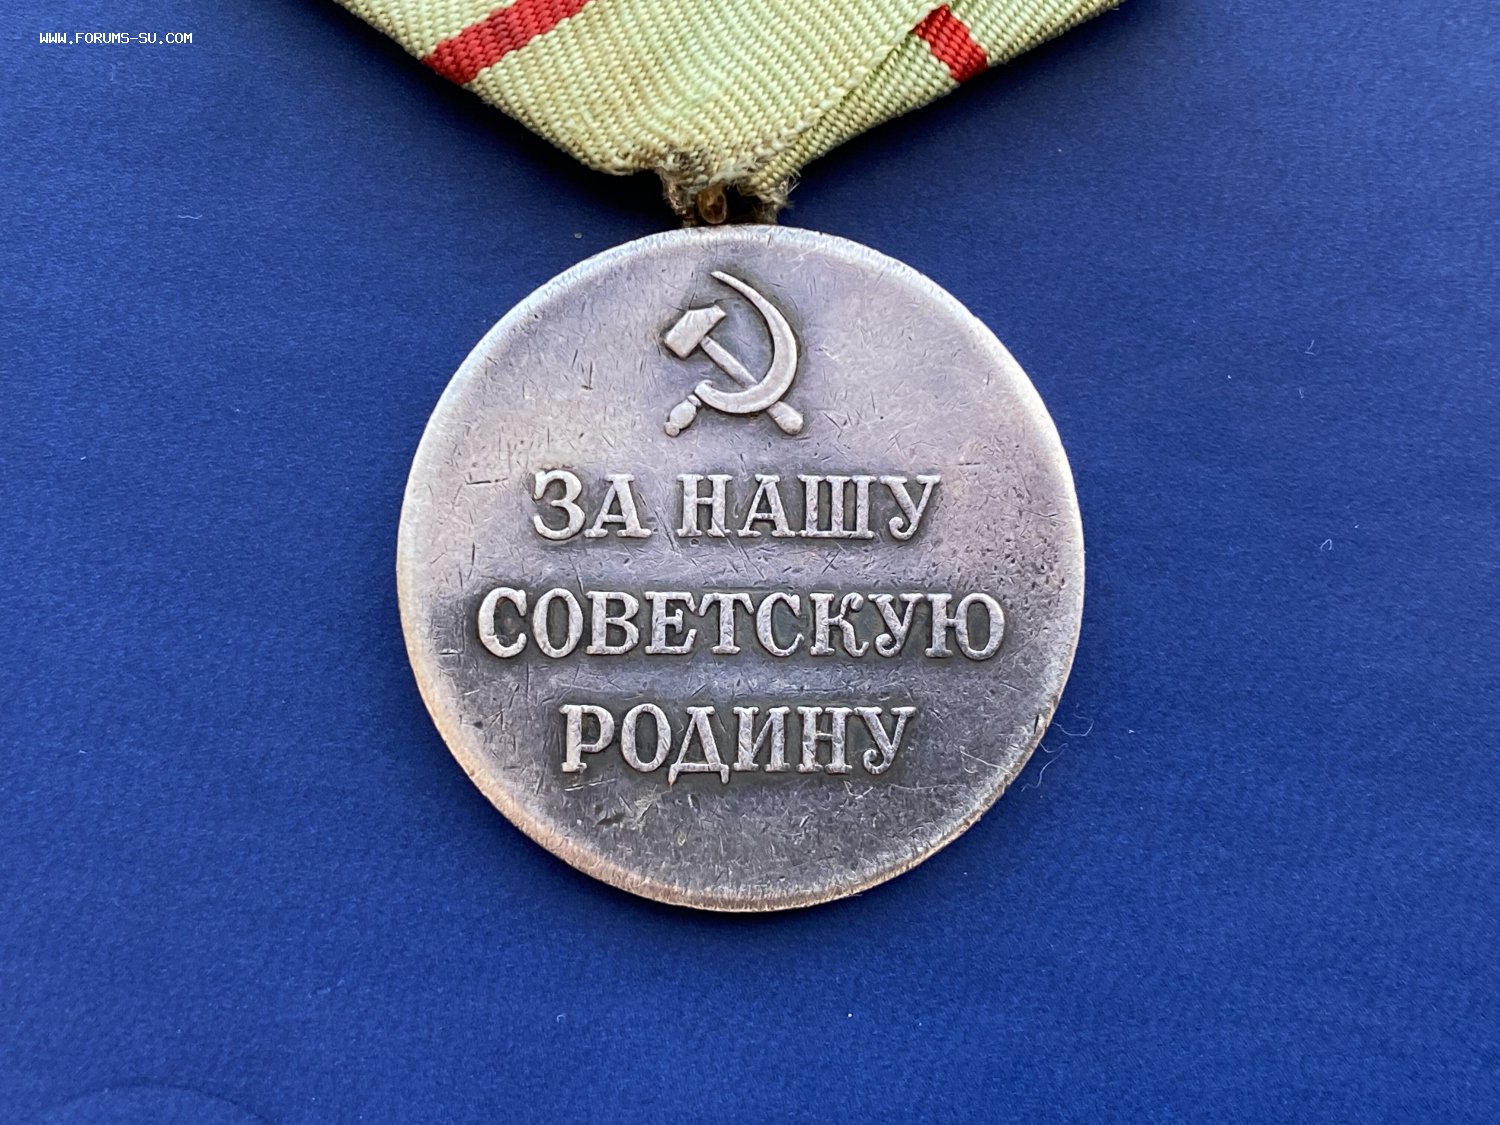 Медаль партизану отечественной войны фото